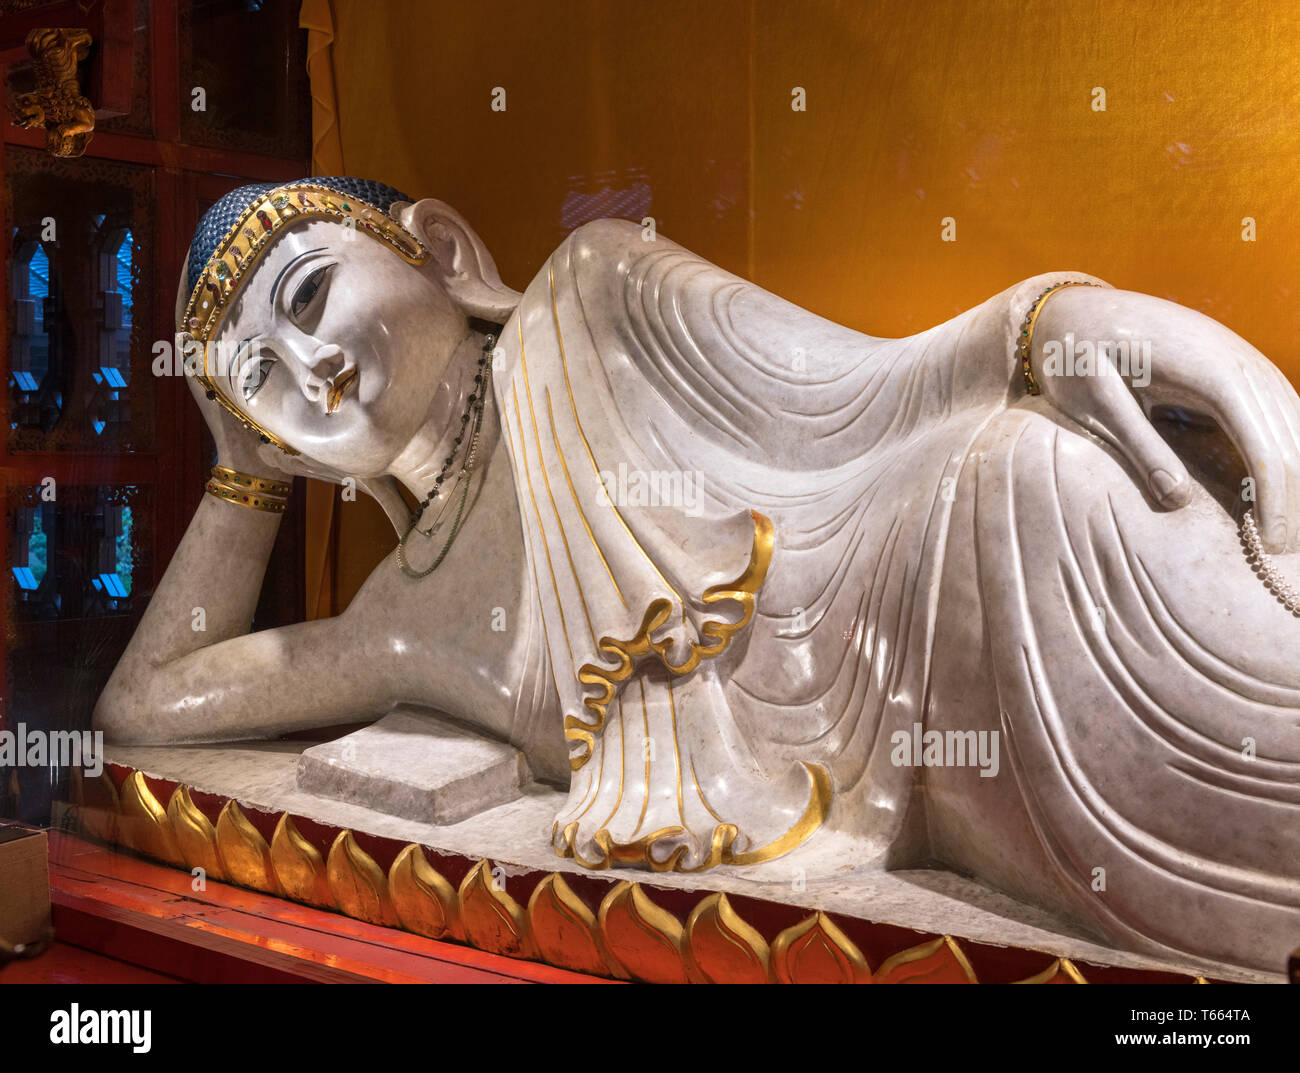 Buda reclinado en el Templo del Buda de Jade, Shanghai, China Foto de stock